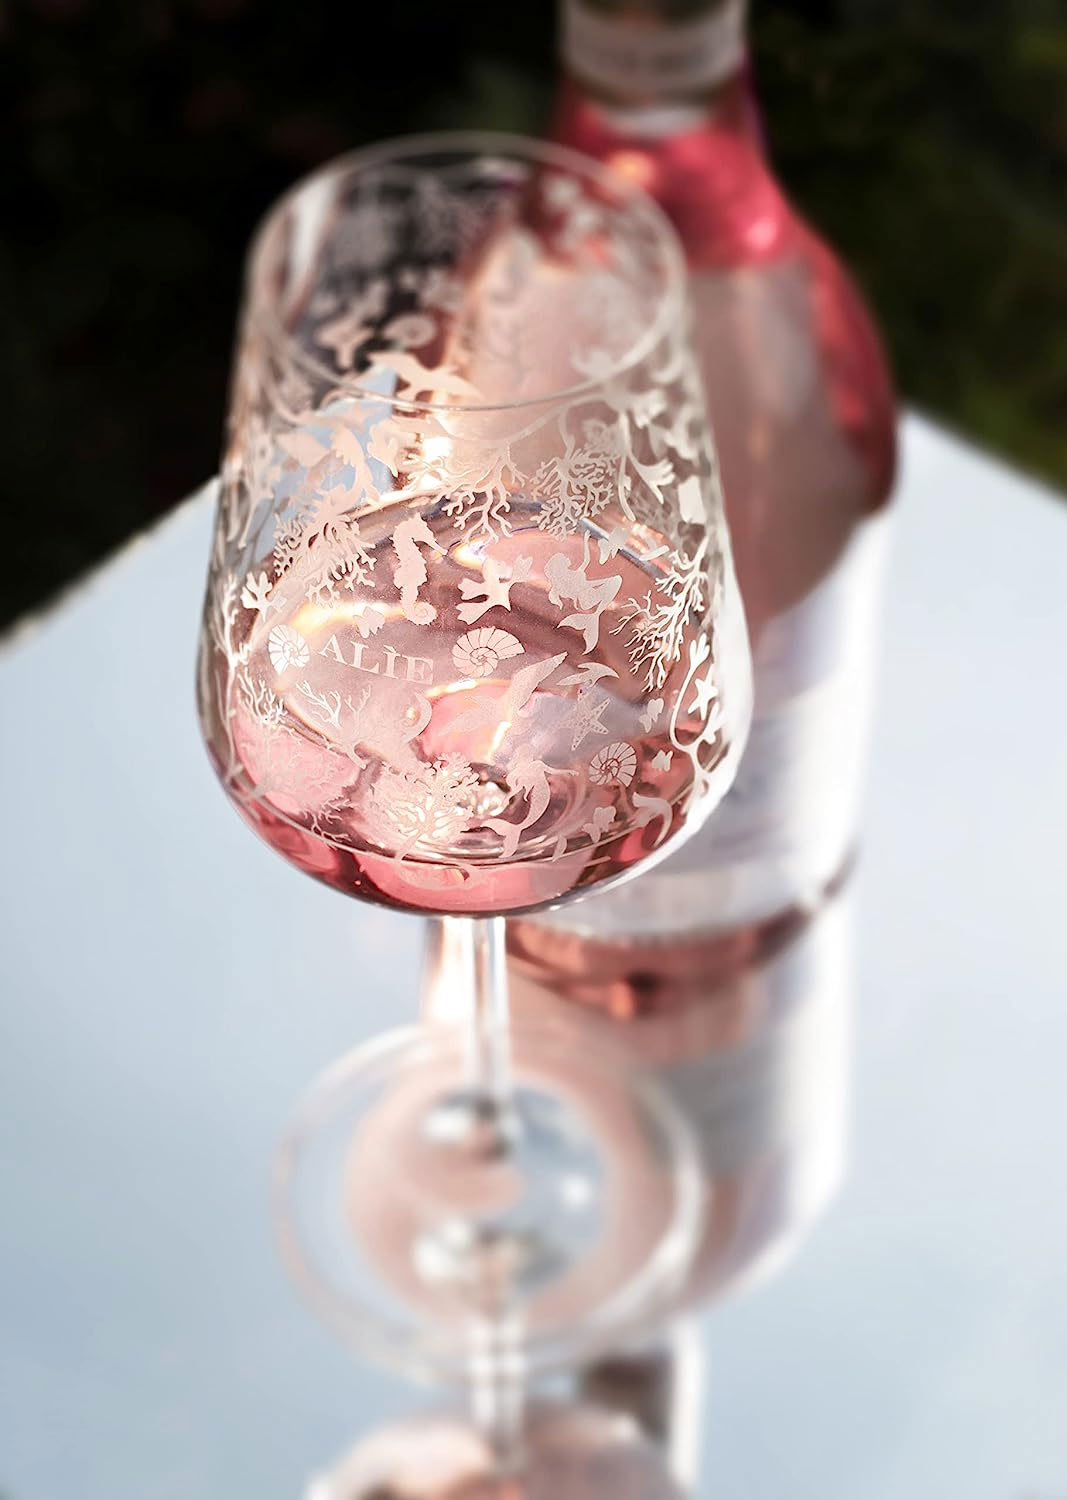 Rose Wein Set - 6x Alie Frescobaldi Rosé 750ml (12,5% Vol)- [Enthält Sulfite]